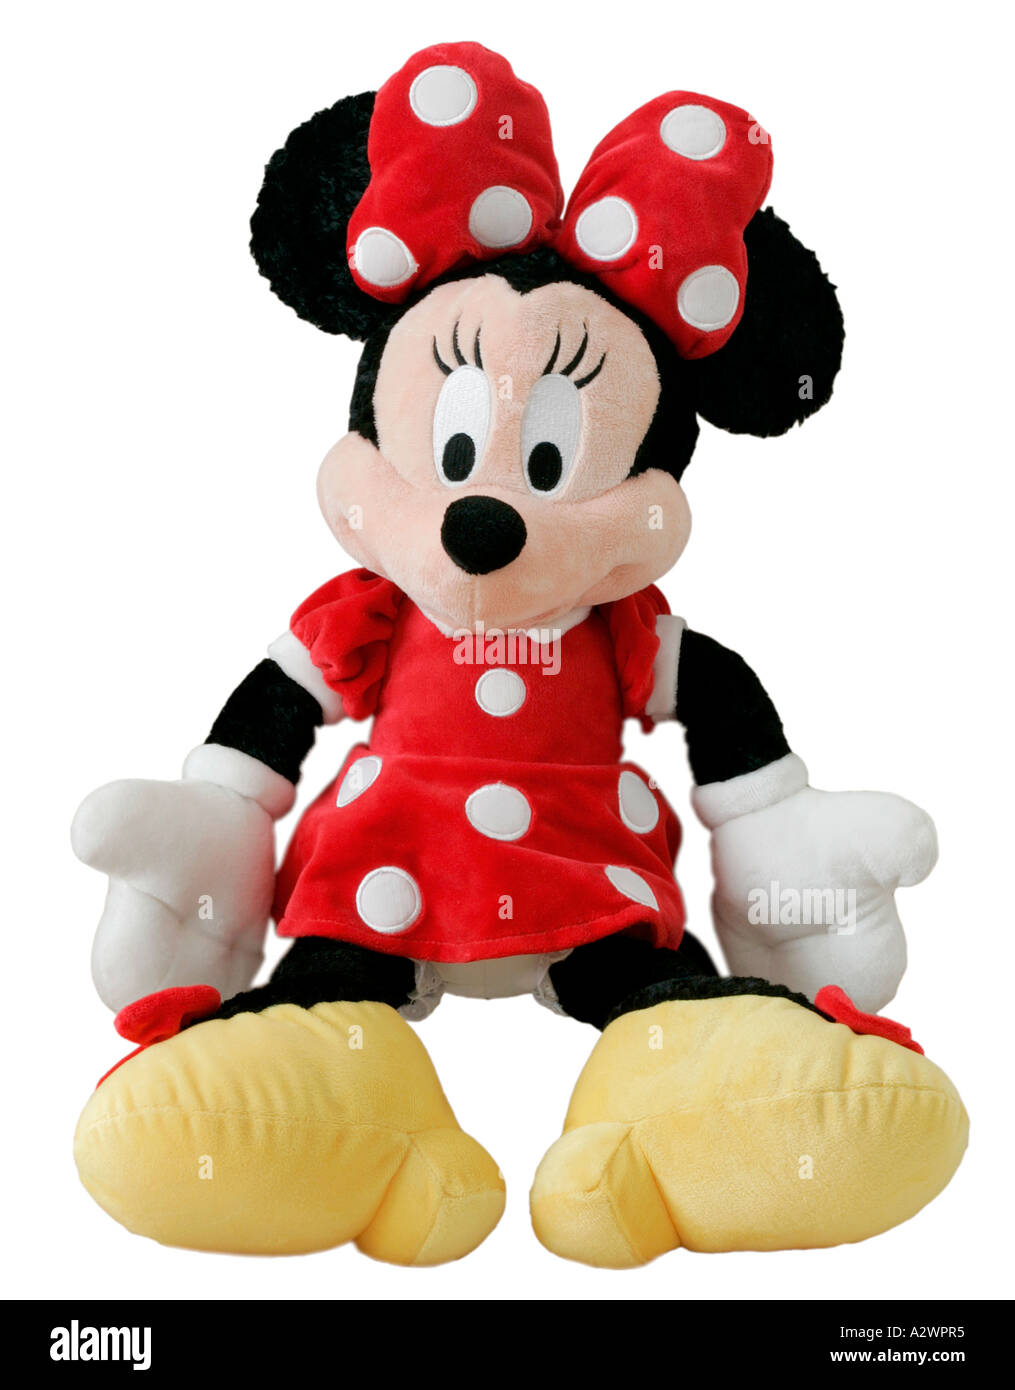 minnie disegno neonato - Cerca con Google  Baby minnie mouse, Minnie mouse  pictures, Baby disney characters